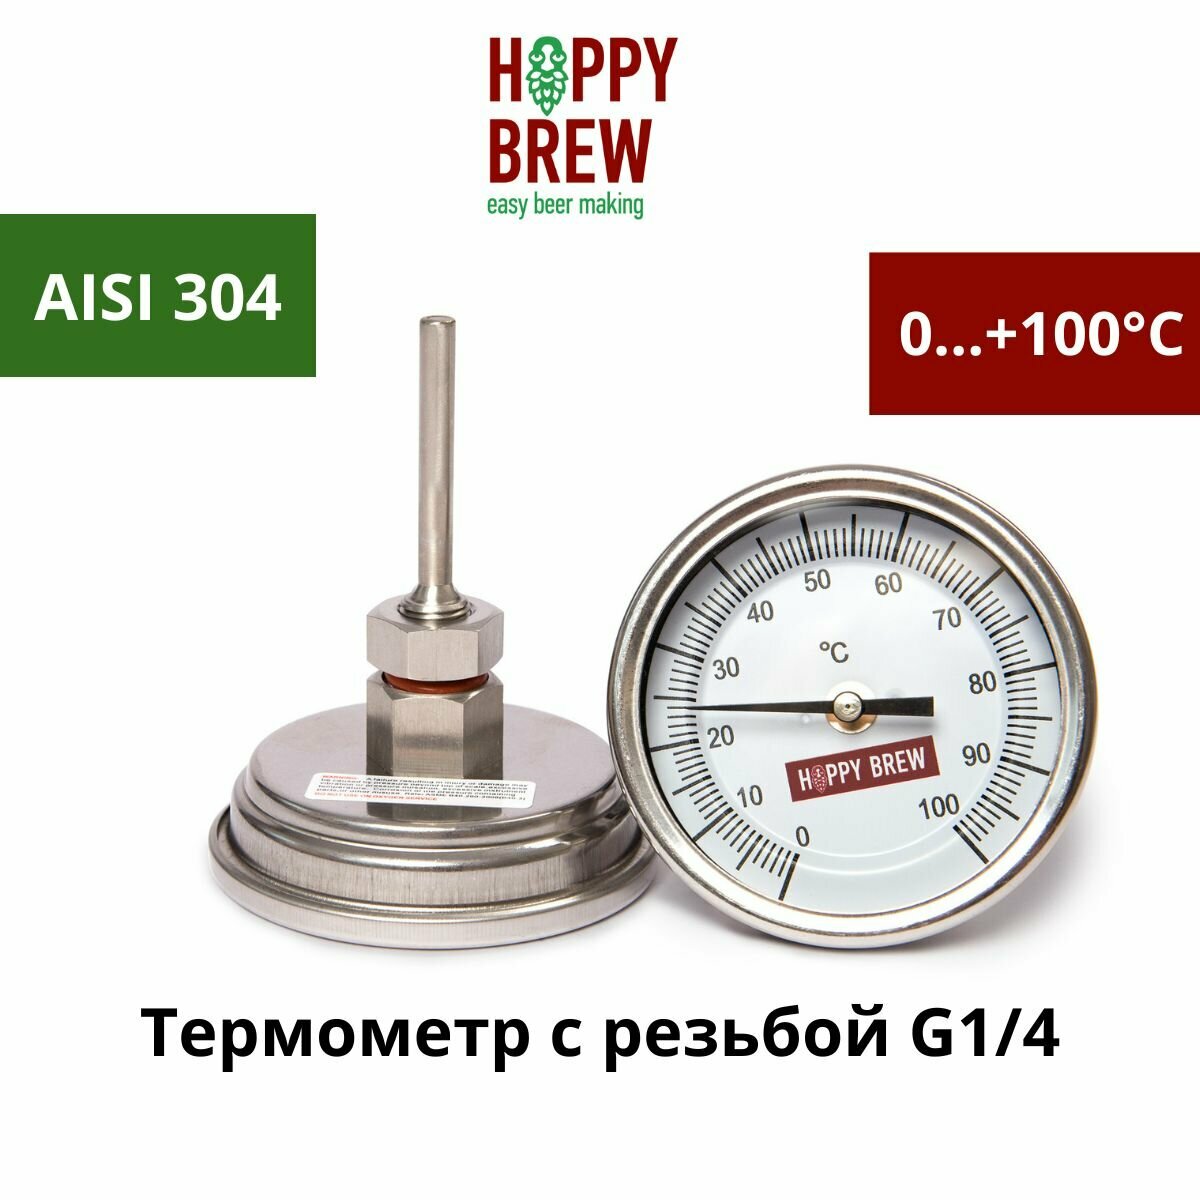 Термометр биметаллический нержавеющий «Hoppy Brew», G1/4 с гайкой